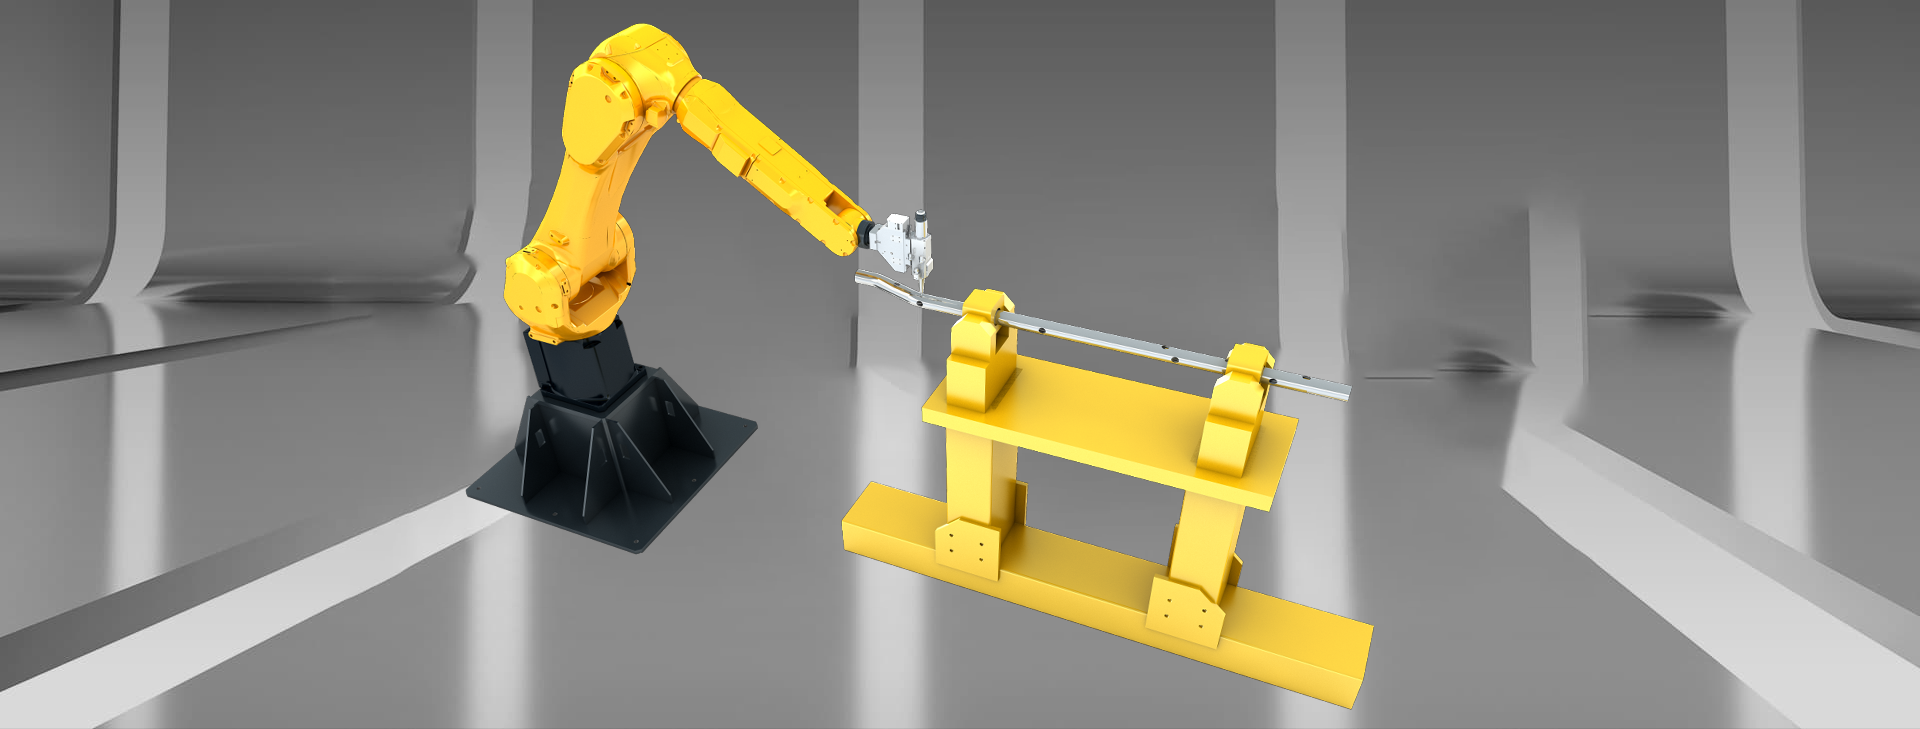 3D Robot Laser Cắt Máy với Loại Chân Đế